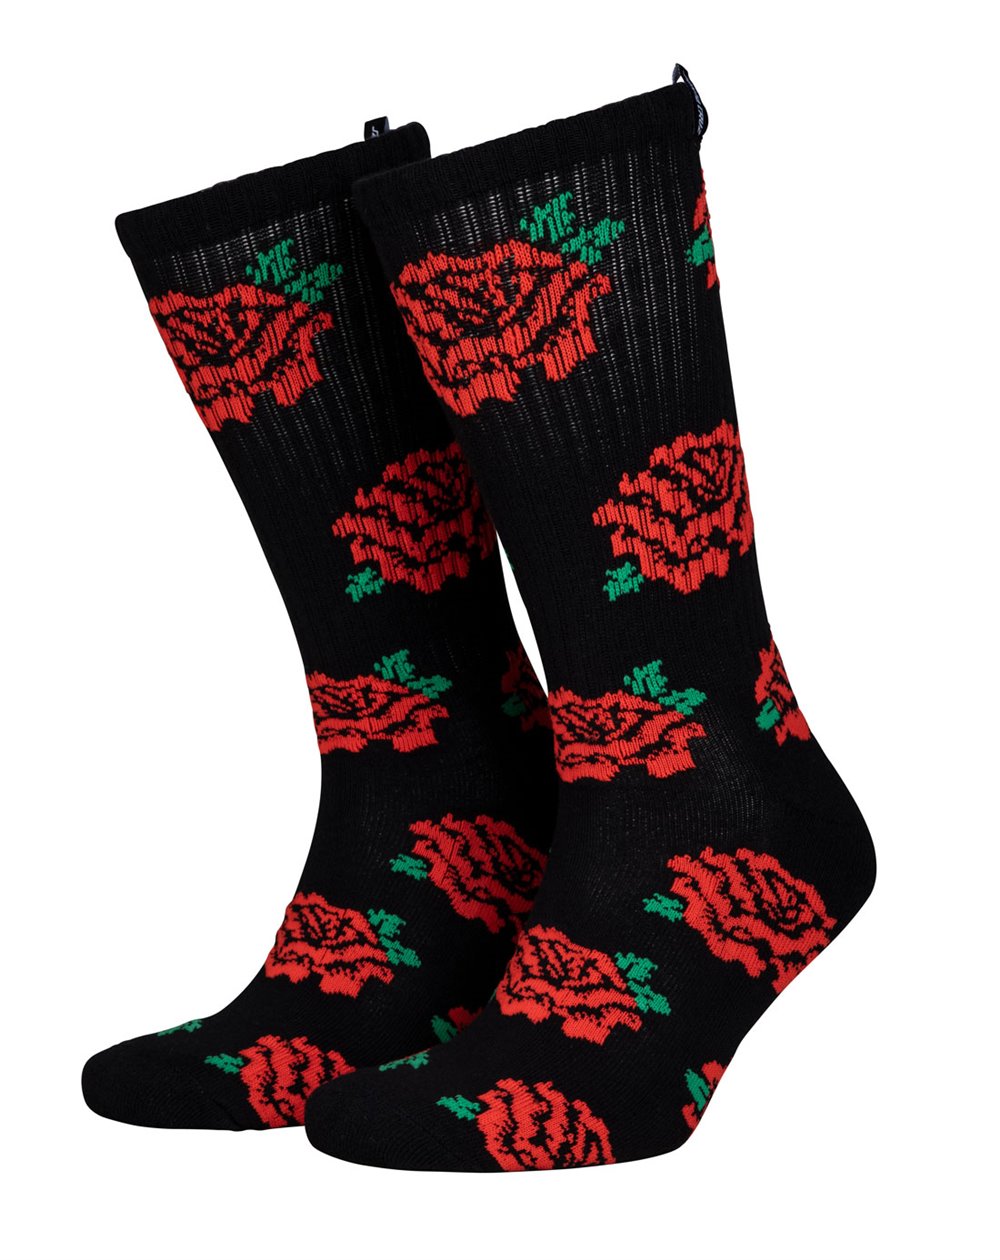 Santa Cruz Herren Skate-Socken Dressen Roses Black